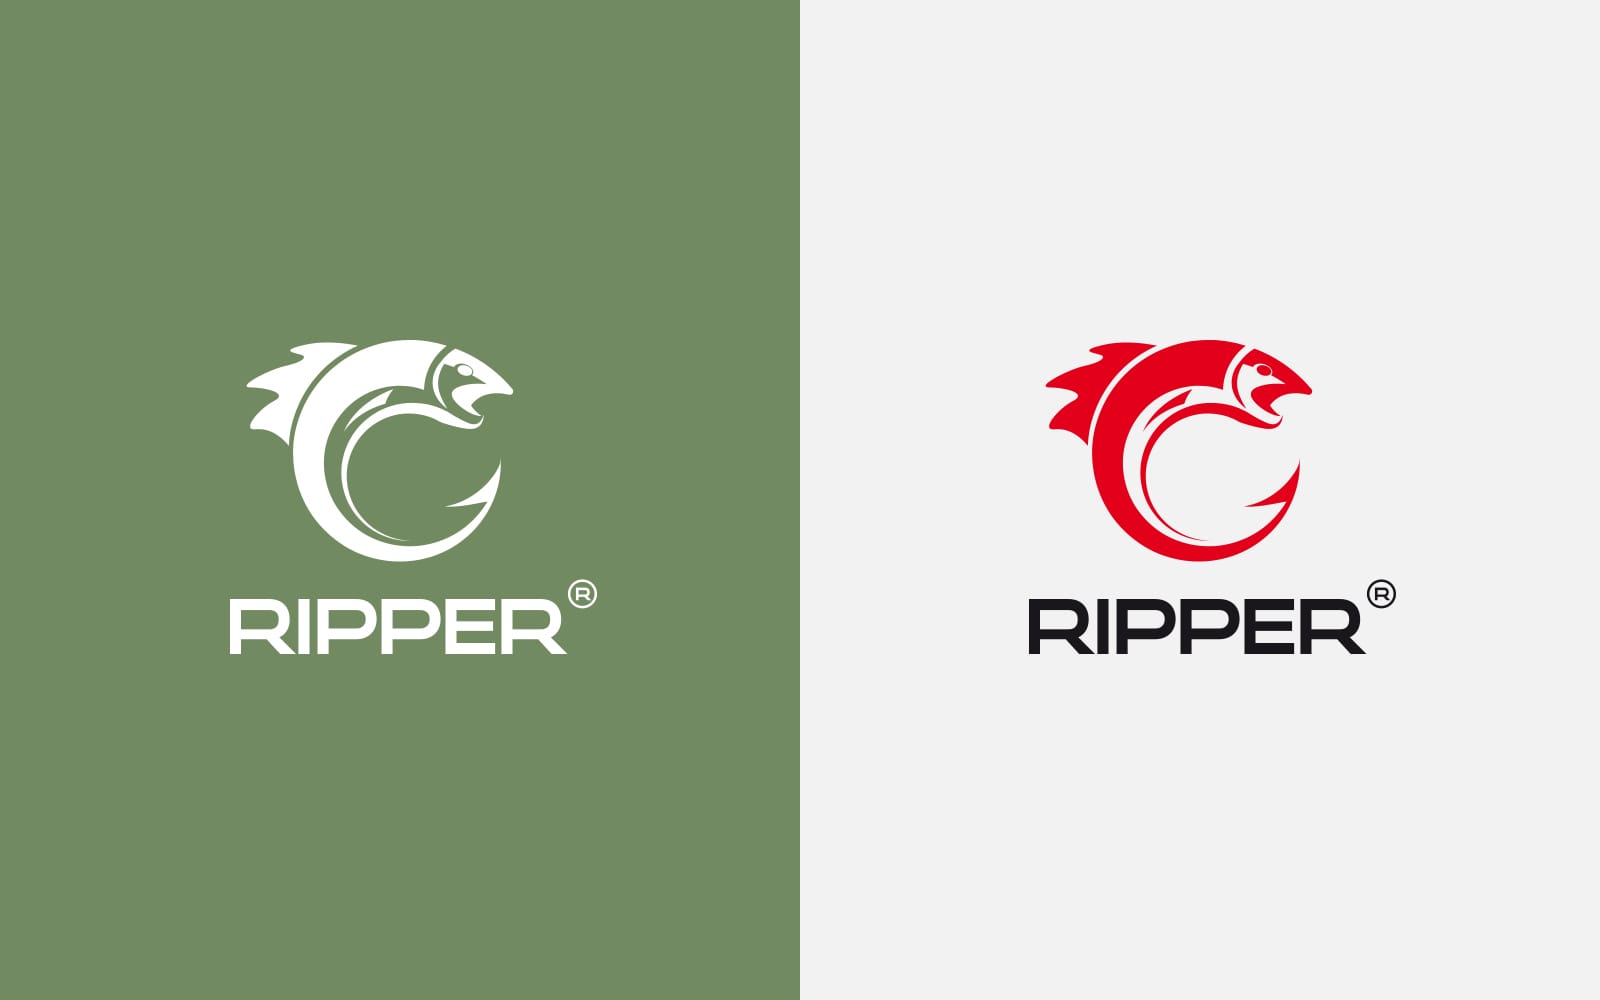 Ripper projektowanie logo marki odzieżowej Agencja brandingowa Moweli Creative